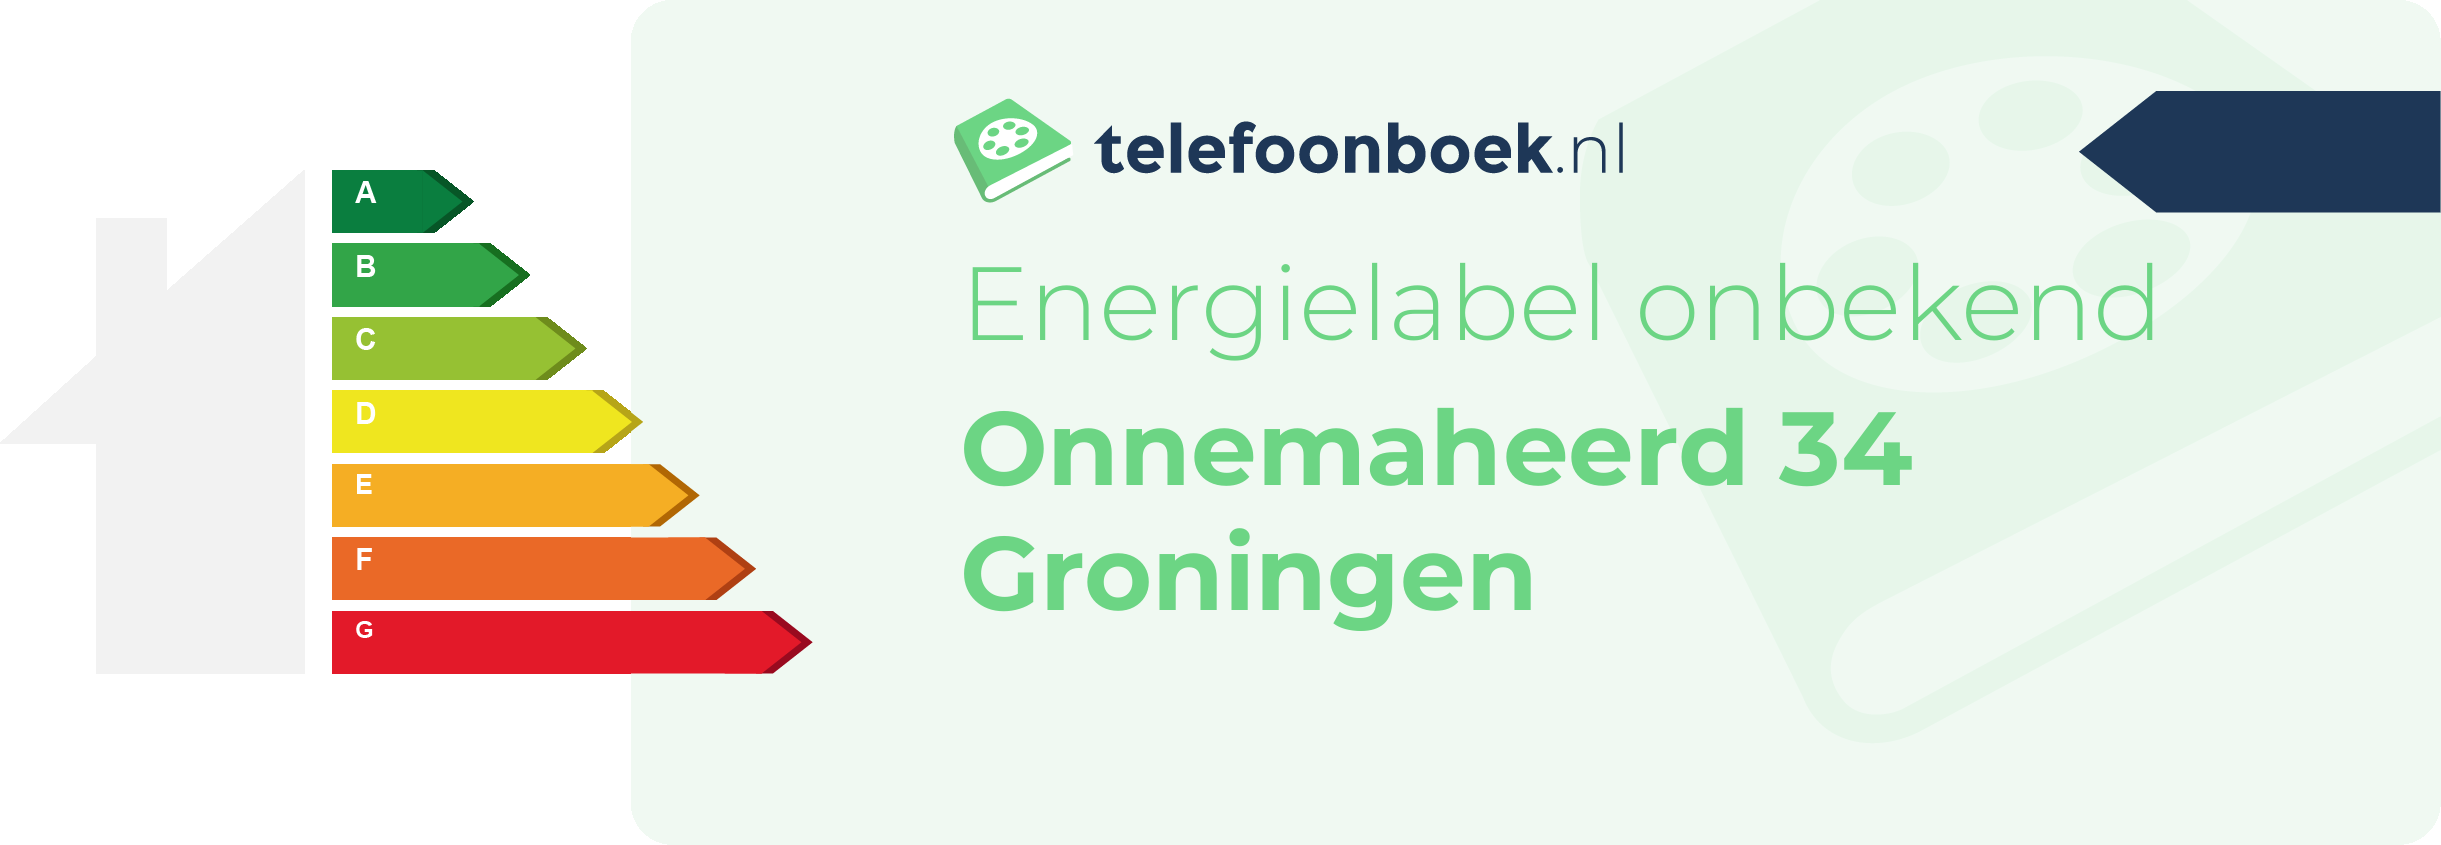 Energielabel Onnemaheerd 34 Groningen